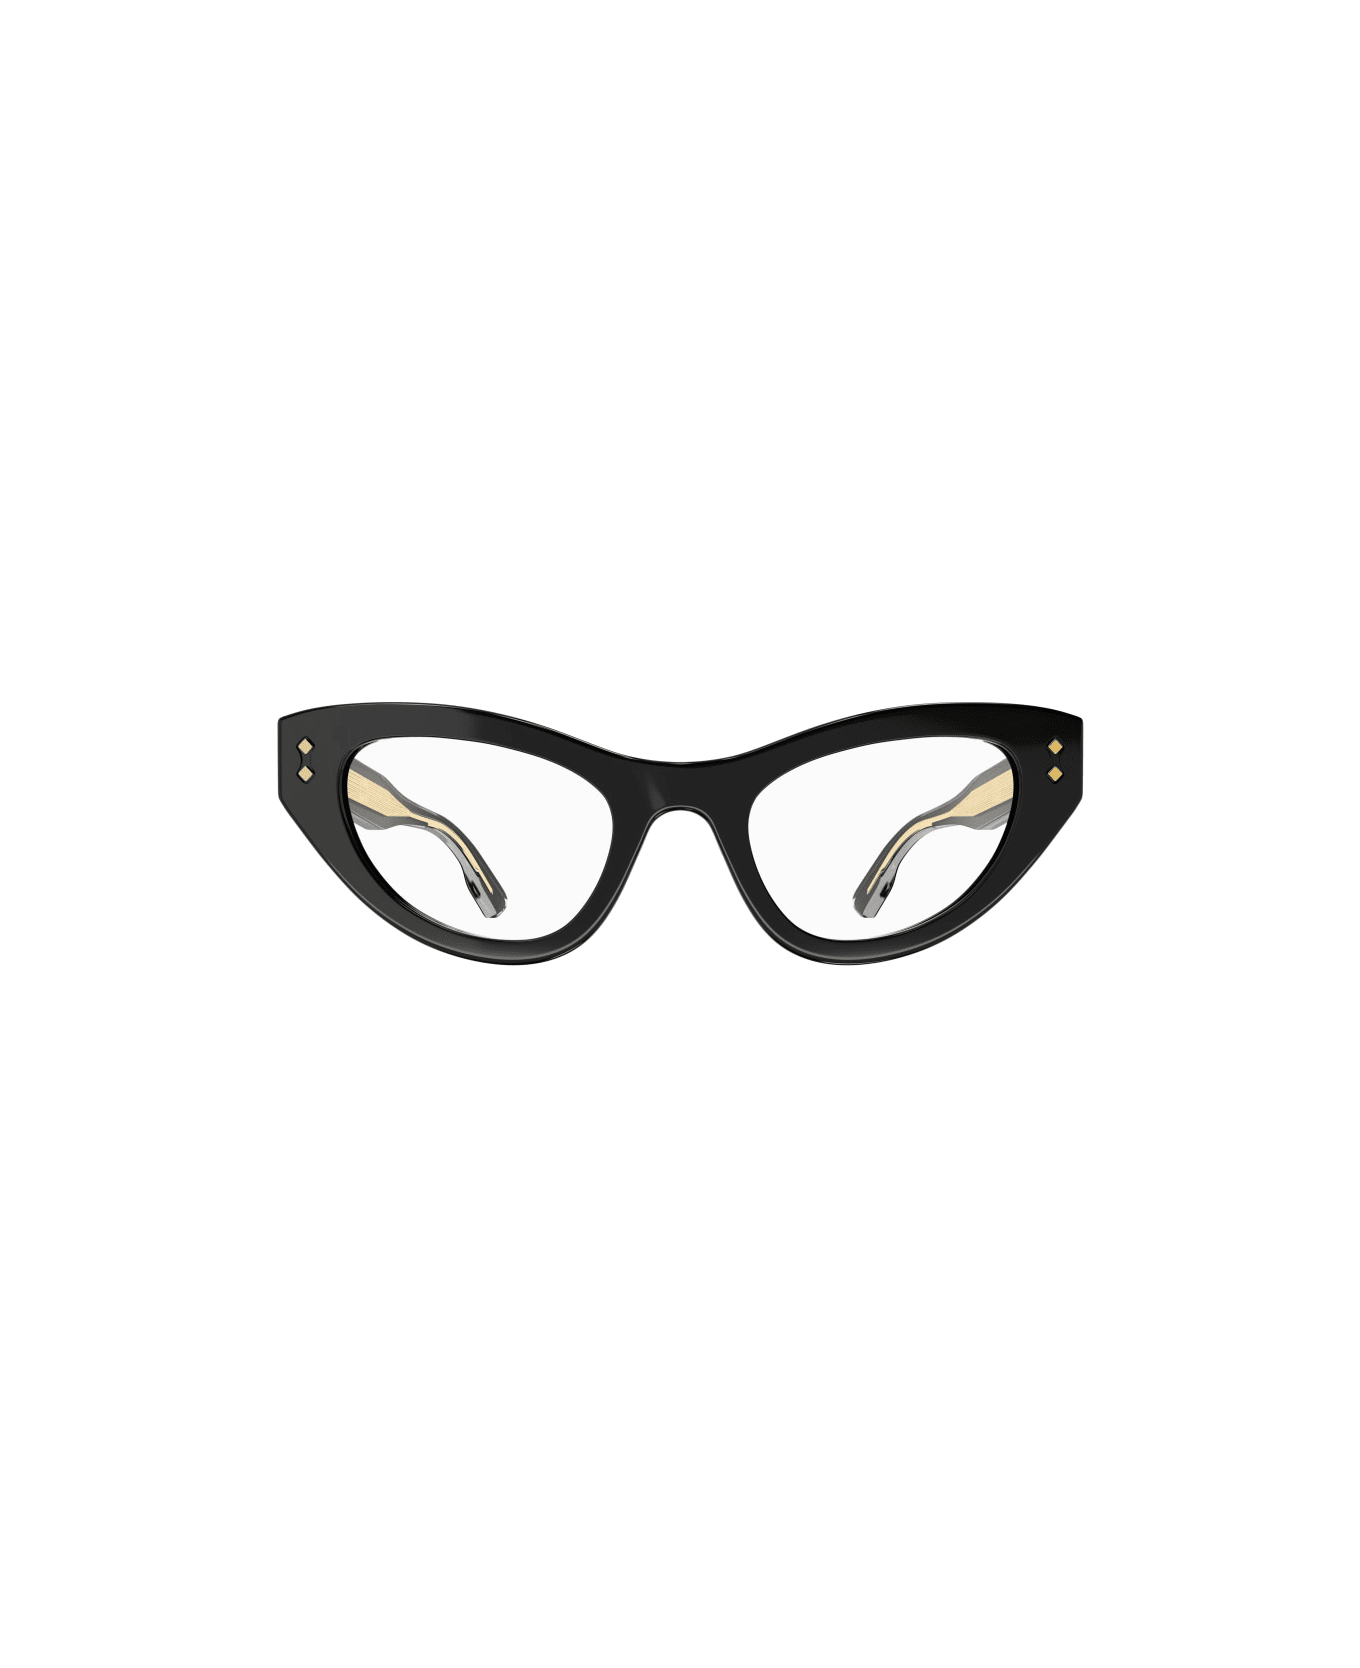 Gucci Eyewear 1bbb4az0a Glasses - 001 black black transpare